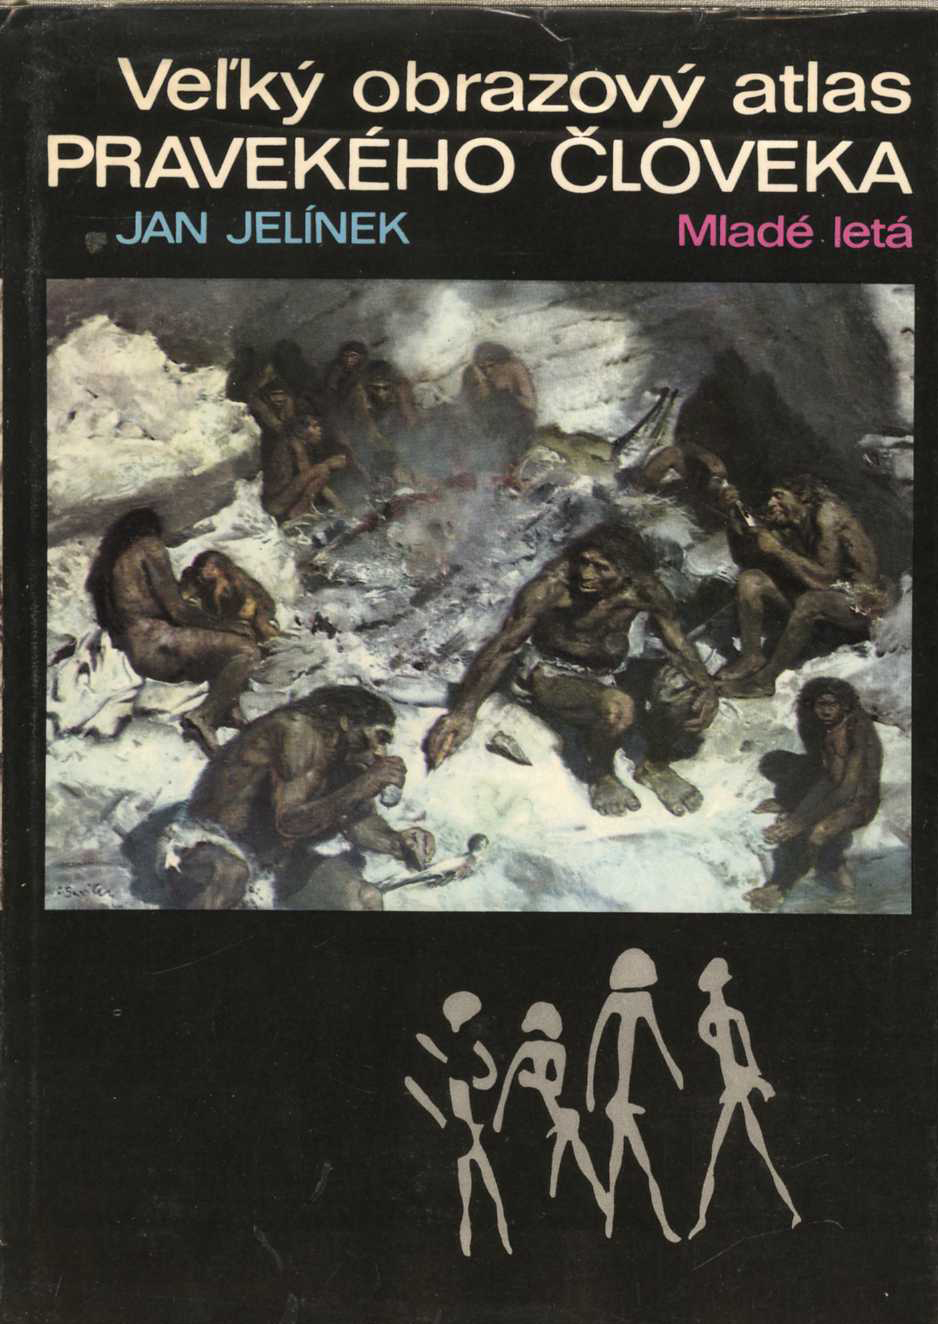 Velký obrazový atlas pravekého človeka (Jan Jelínek)